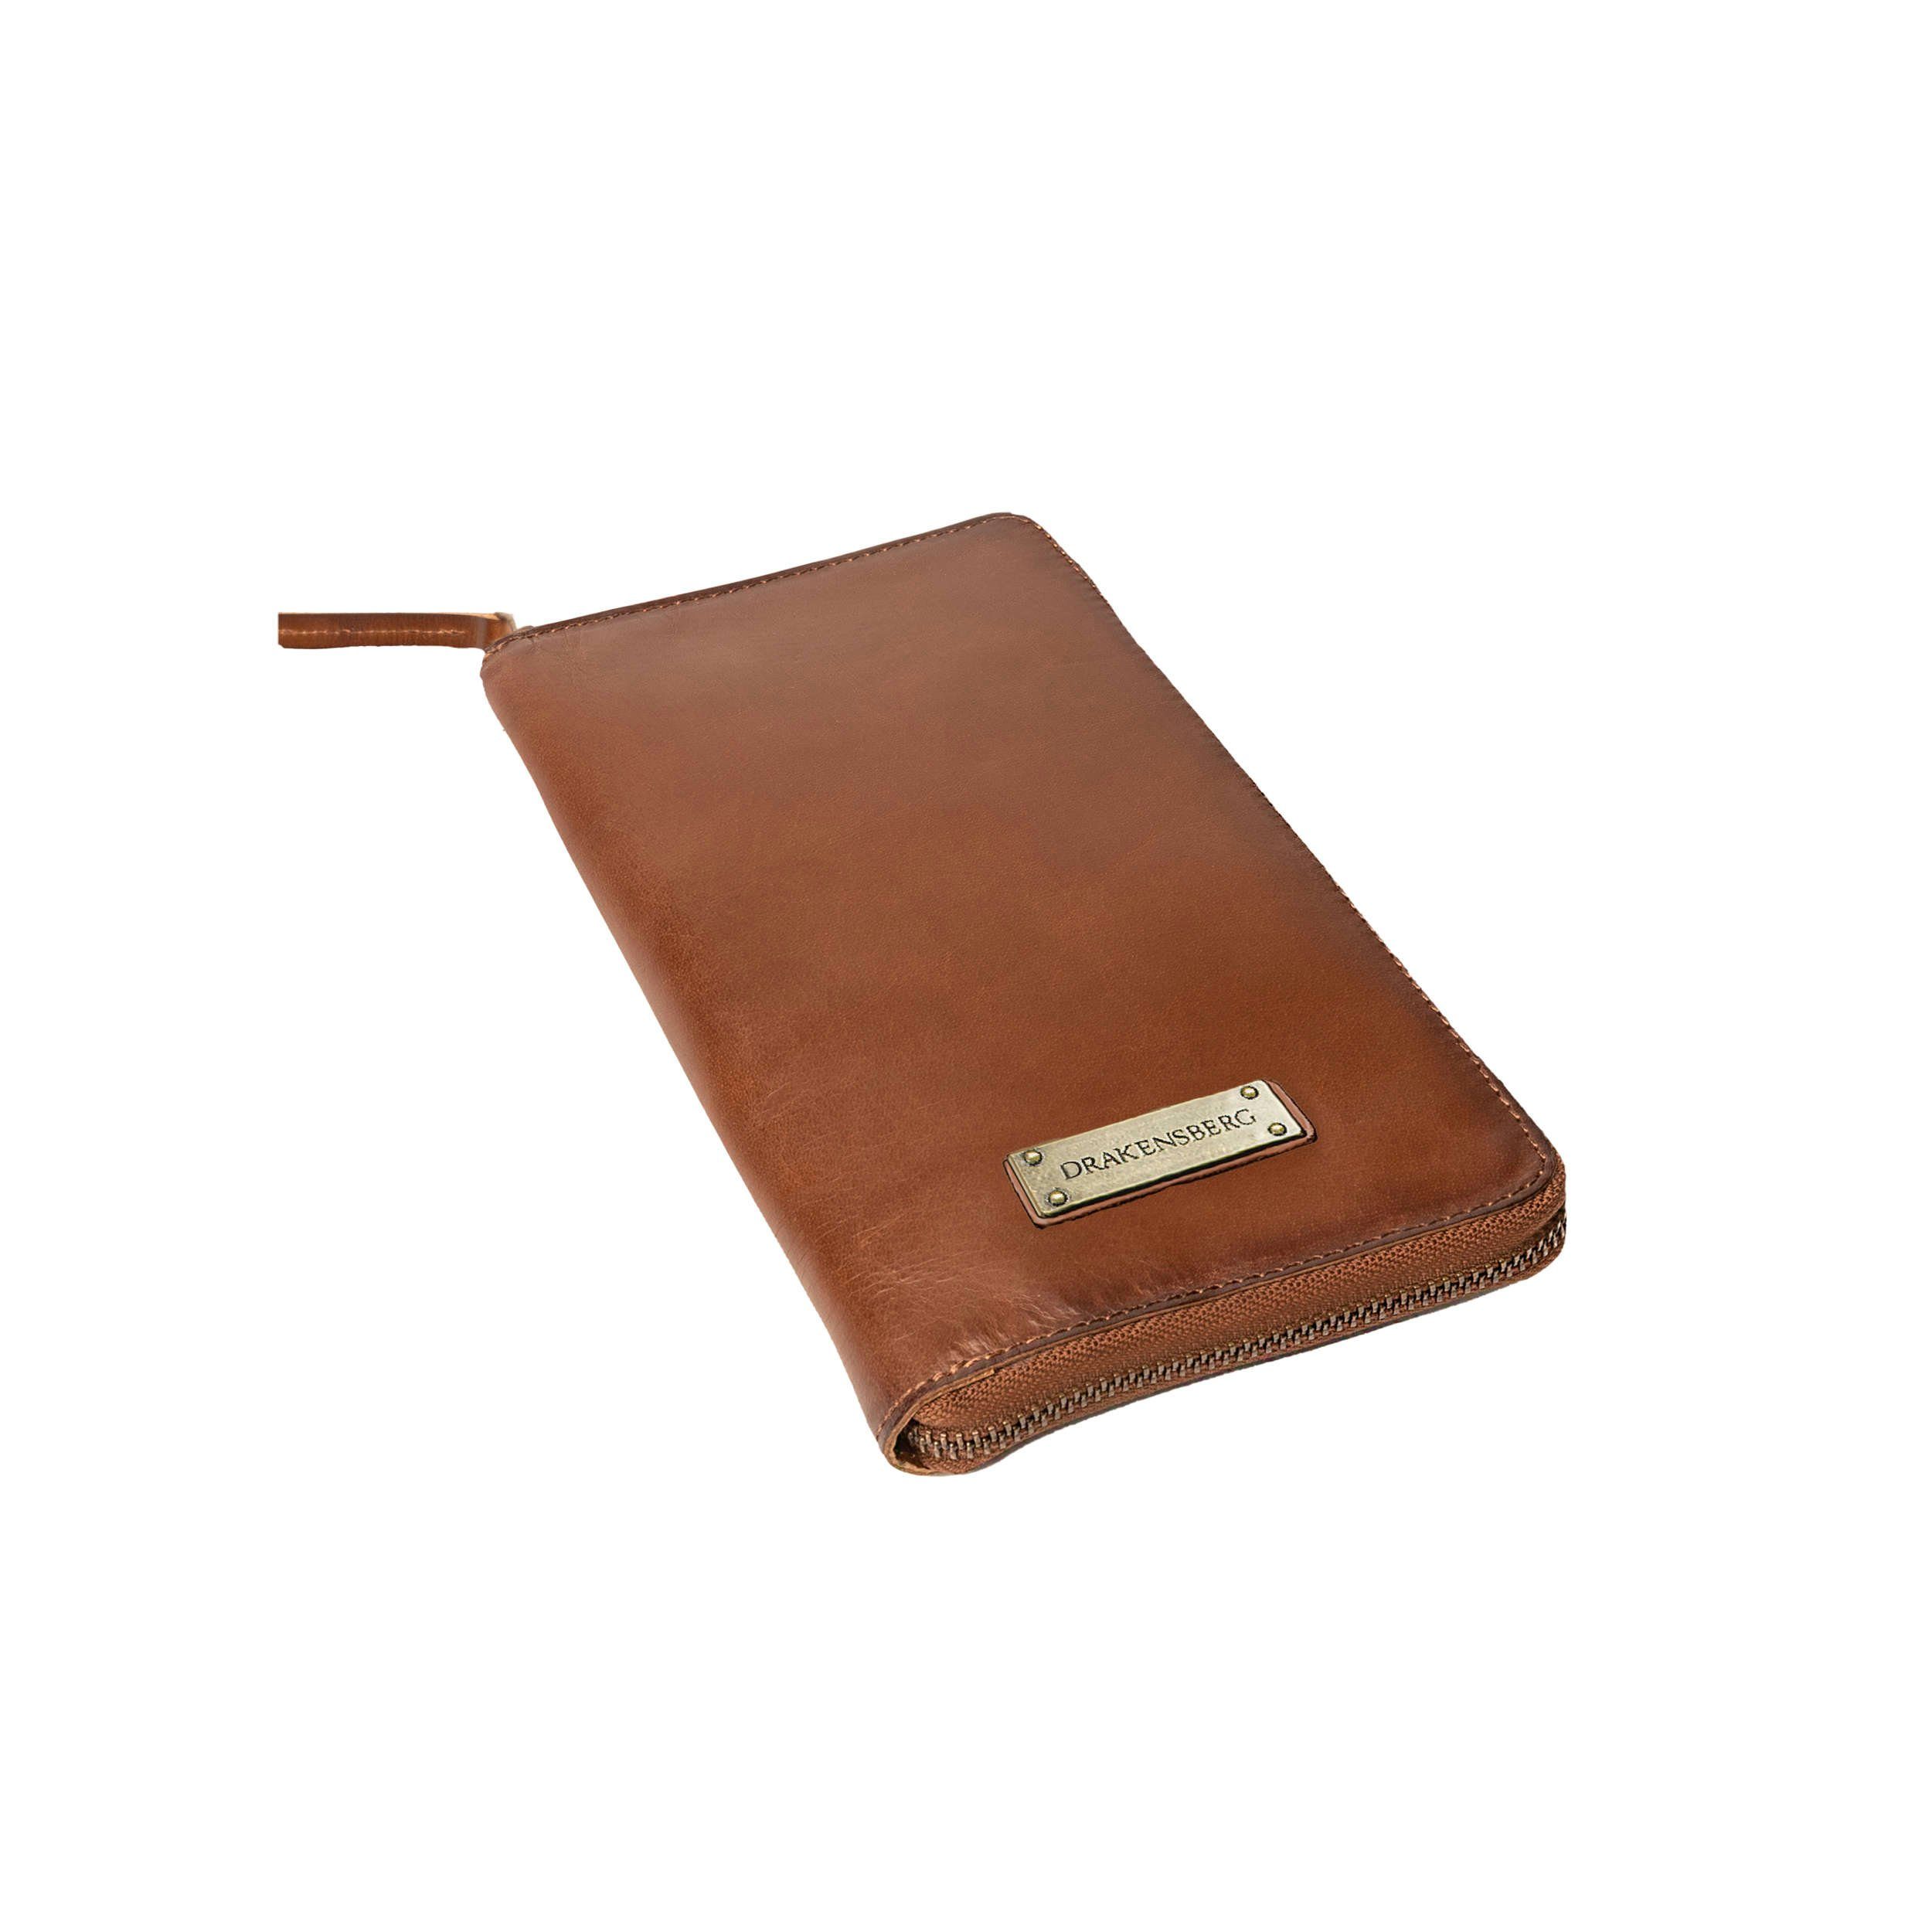 DRAKENSBERG RFID und Vintage-Braun, Reisebrieftasche Brieftasche mit »Travis« Reise-Organizer Leder Schutz Reisegeldbeutel große